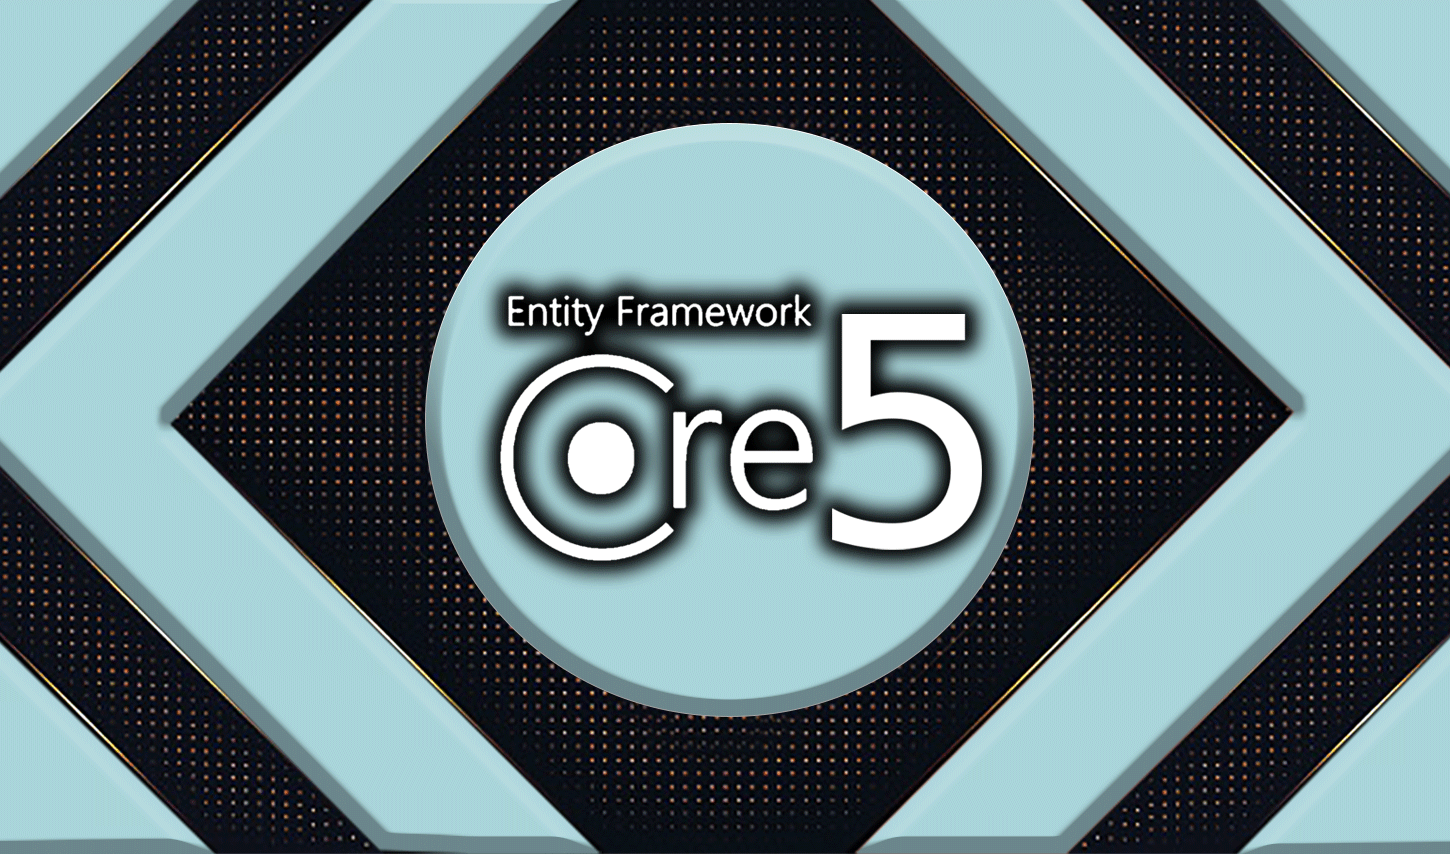 آموزش Entity Framework Core, در دوره آموزش Entity Framework Core دانشجویان با تکنولوژی EF Core به طور کامل آشنا می شوند.